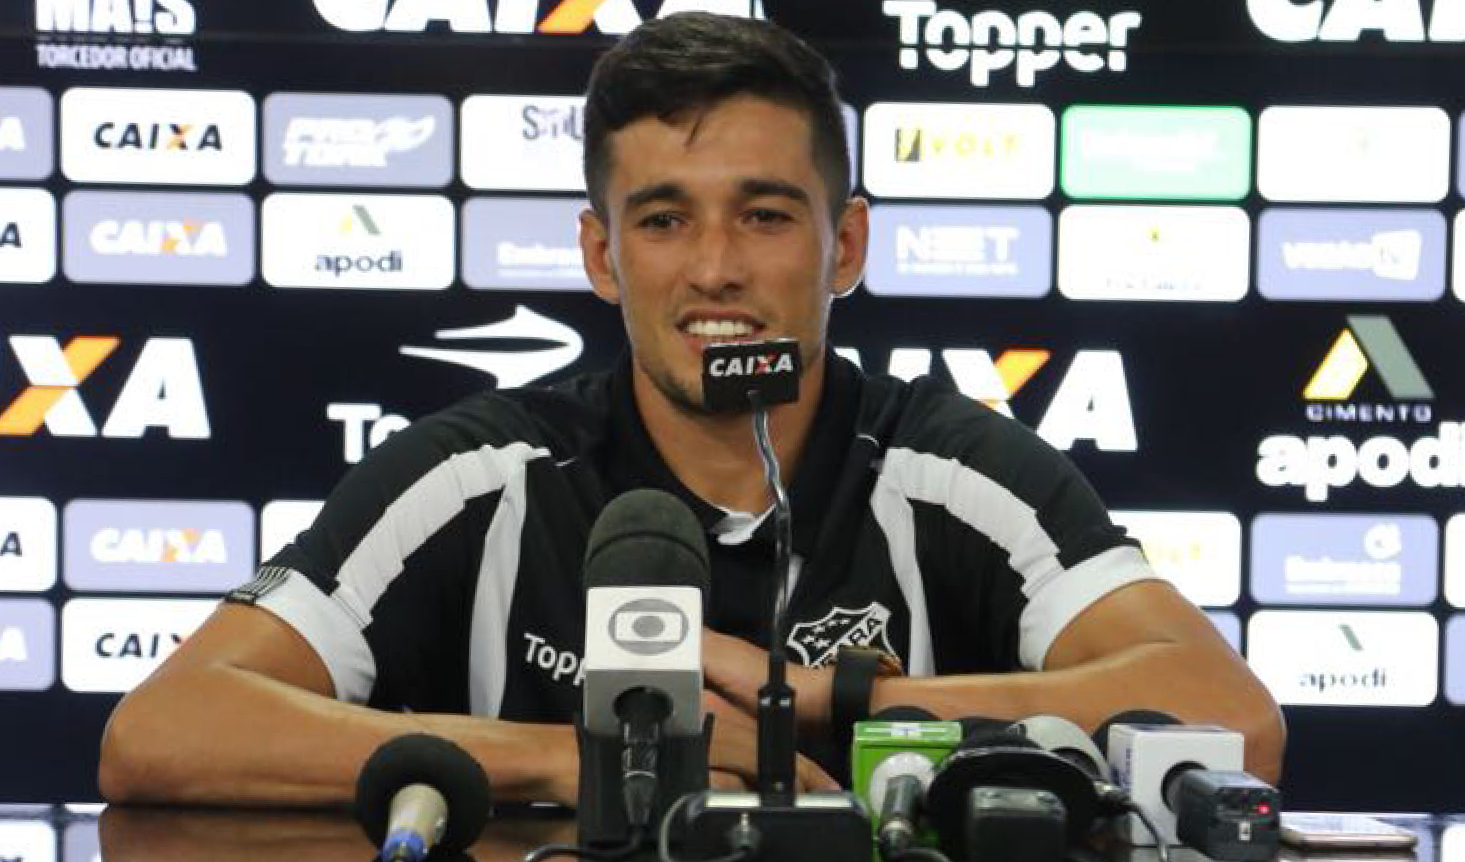 Em apresentação, Juninho manda recado: "Gosto de fazer gol. Sempre que tiver oportunidade, vou finalizar"